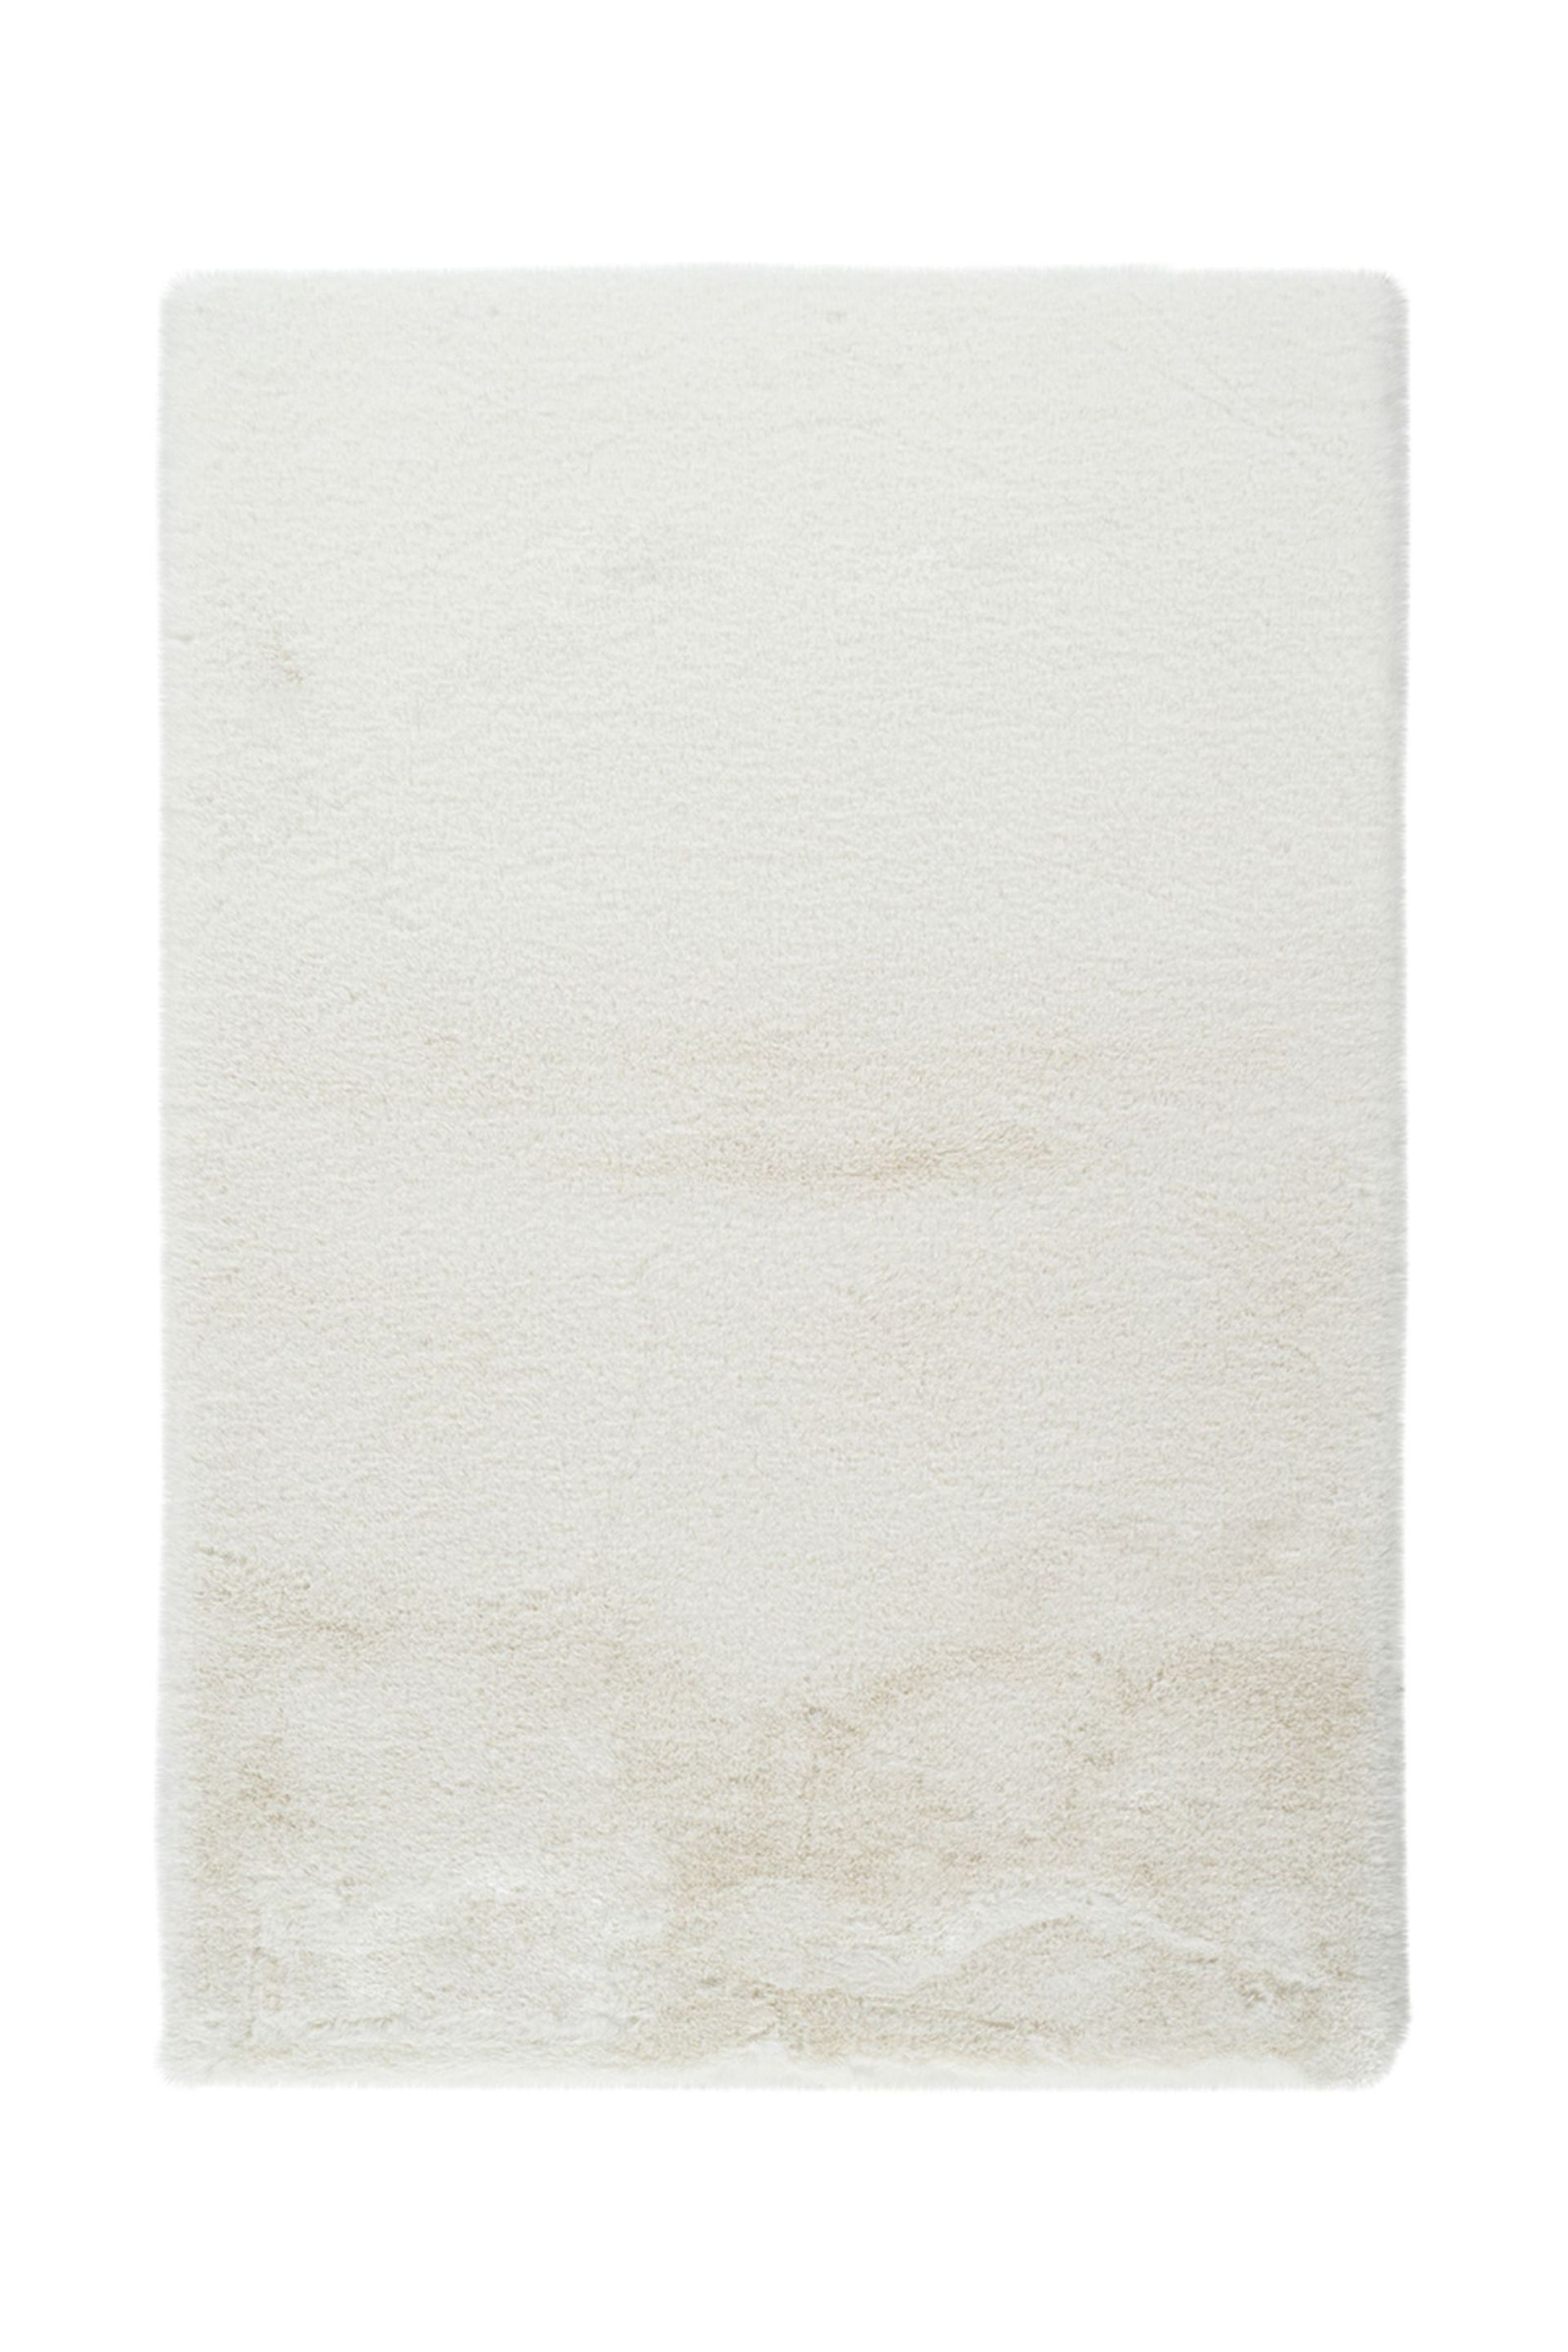 Badematte Rabbit Light 625 Weiß 40 cm x 60 cm